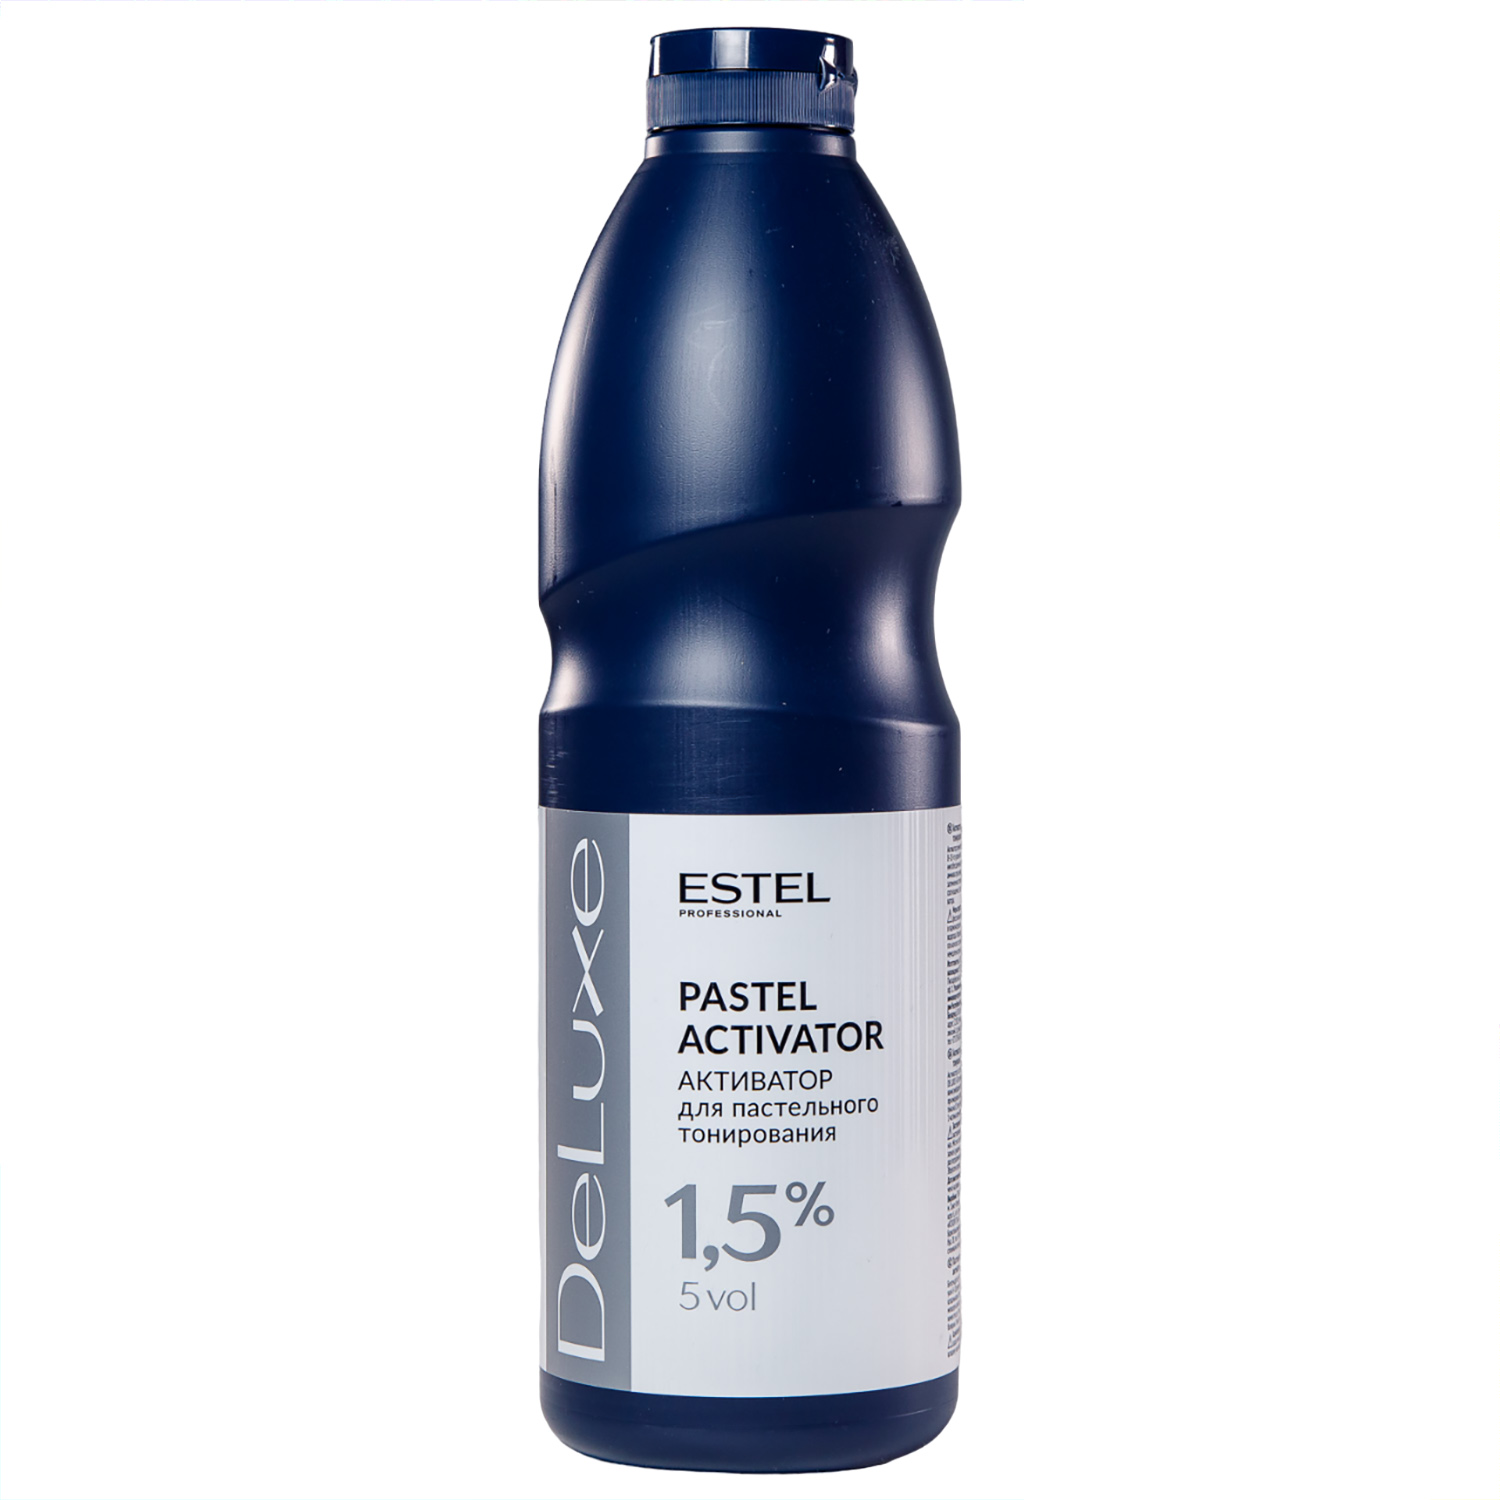 Estel Активатор 1,5% для пастельного тонирования, 1000 мл (Estel, De luxe) estel активатор sensation de luxe 1 5% 1000 мл